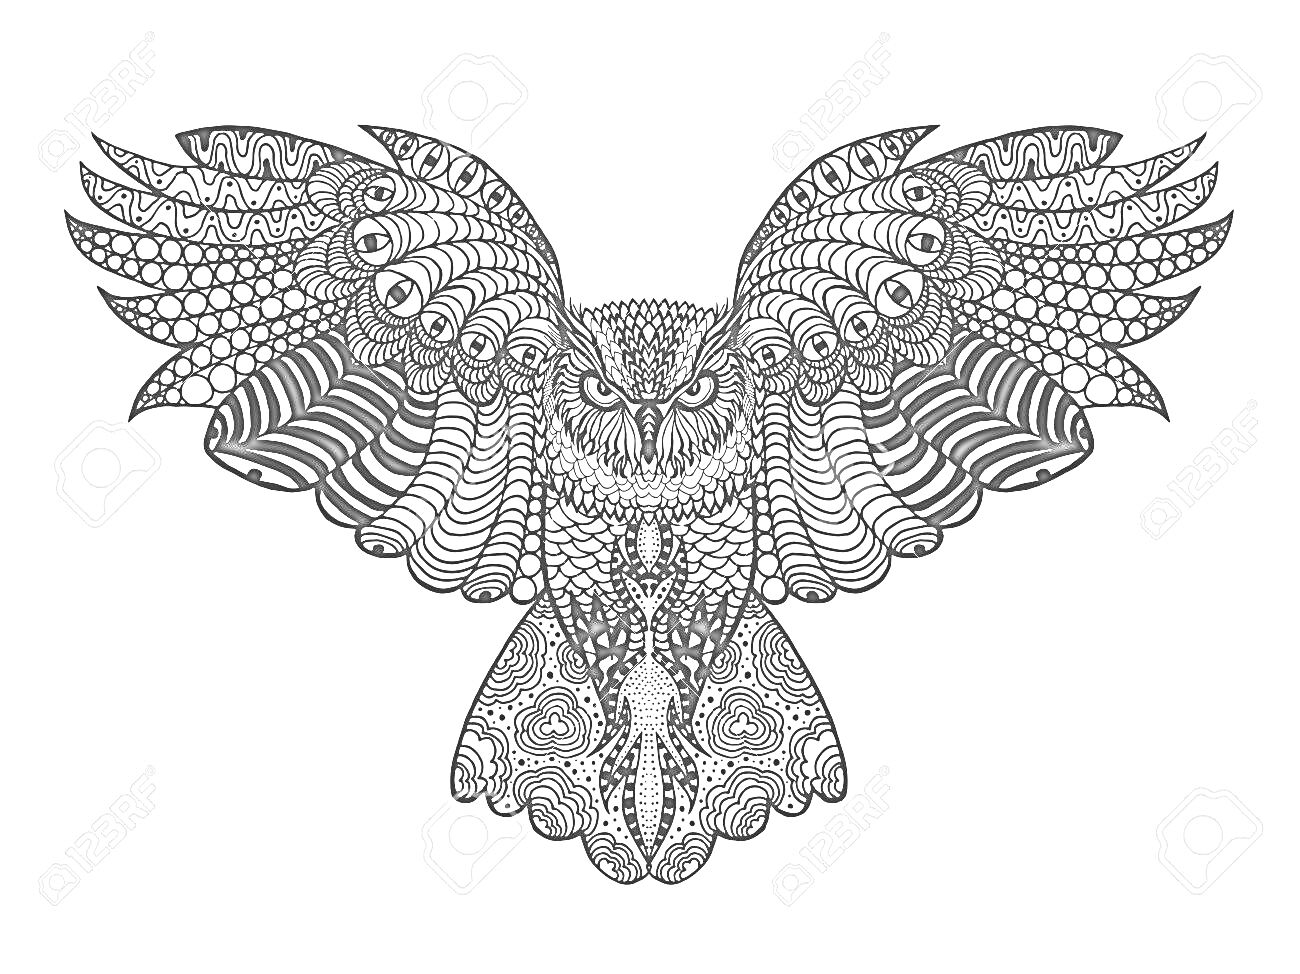 Антистресс-раскраска с изображением совы с расправленными крыльями, выполненная в виде декоративного узора